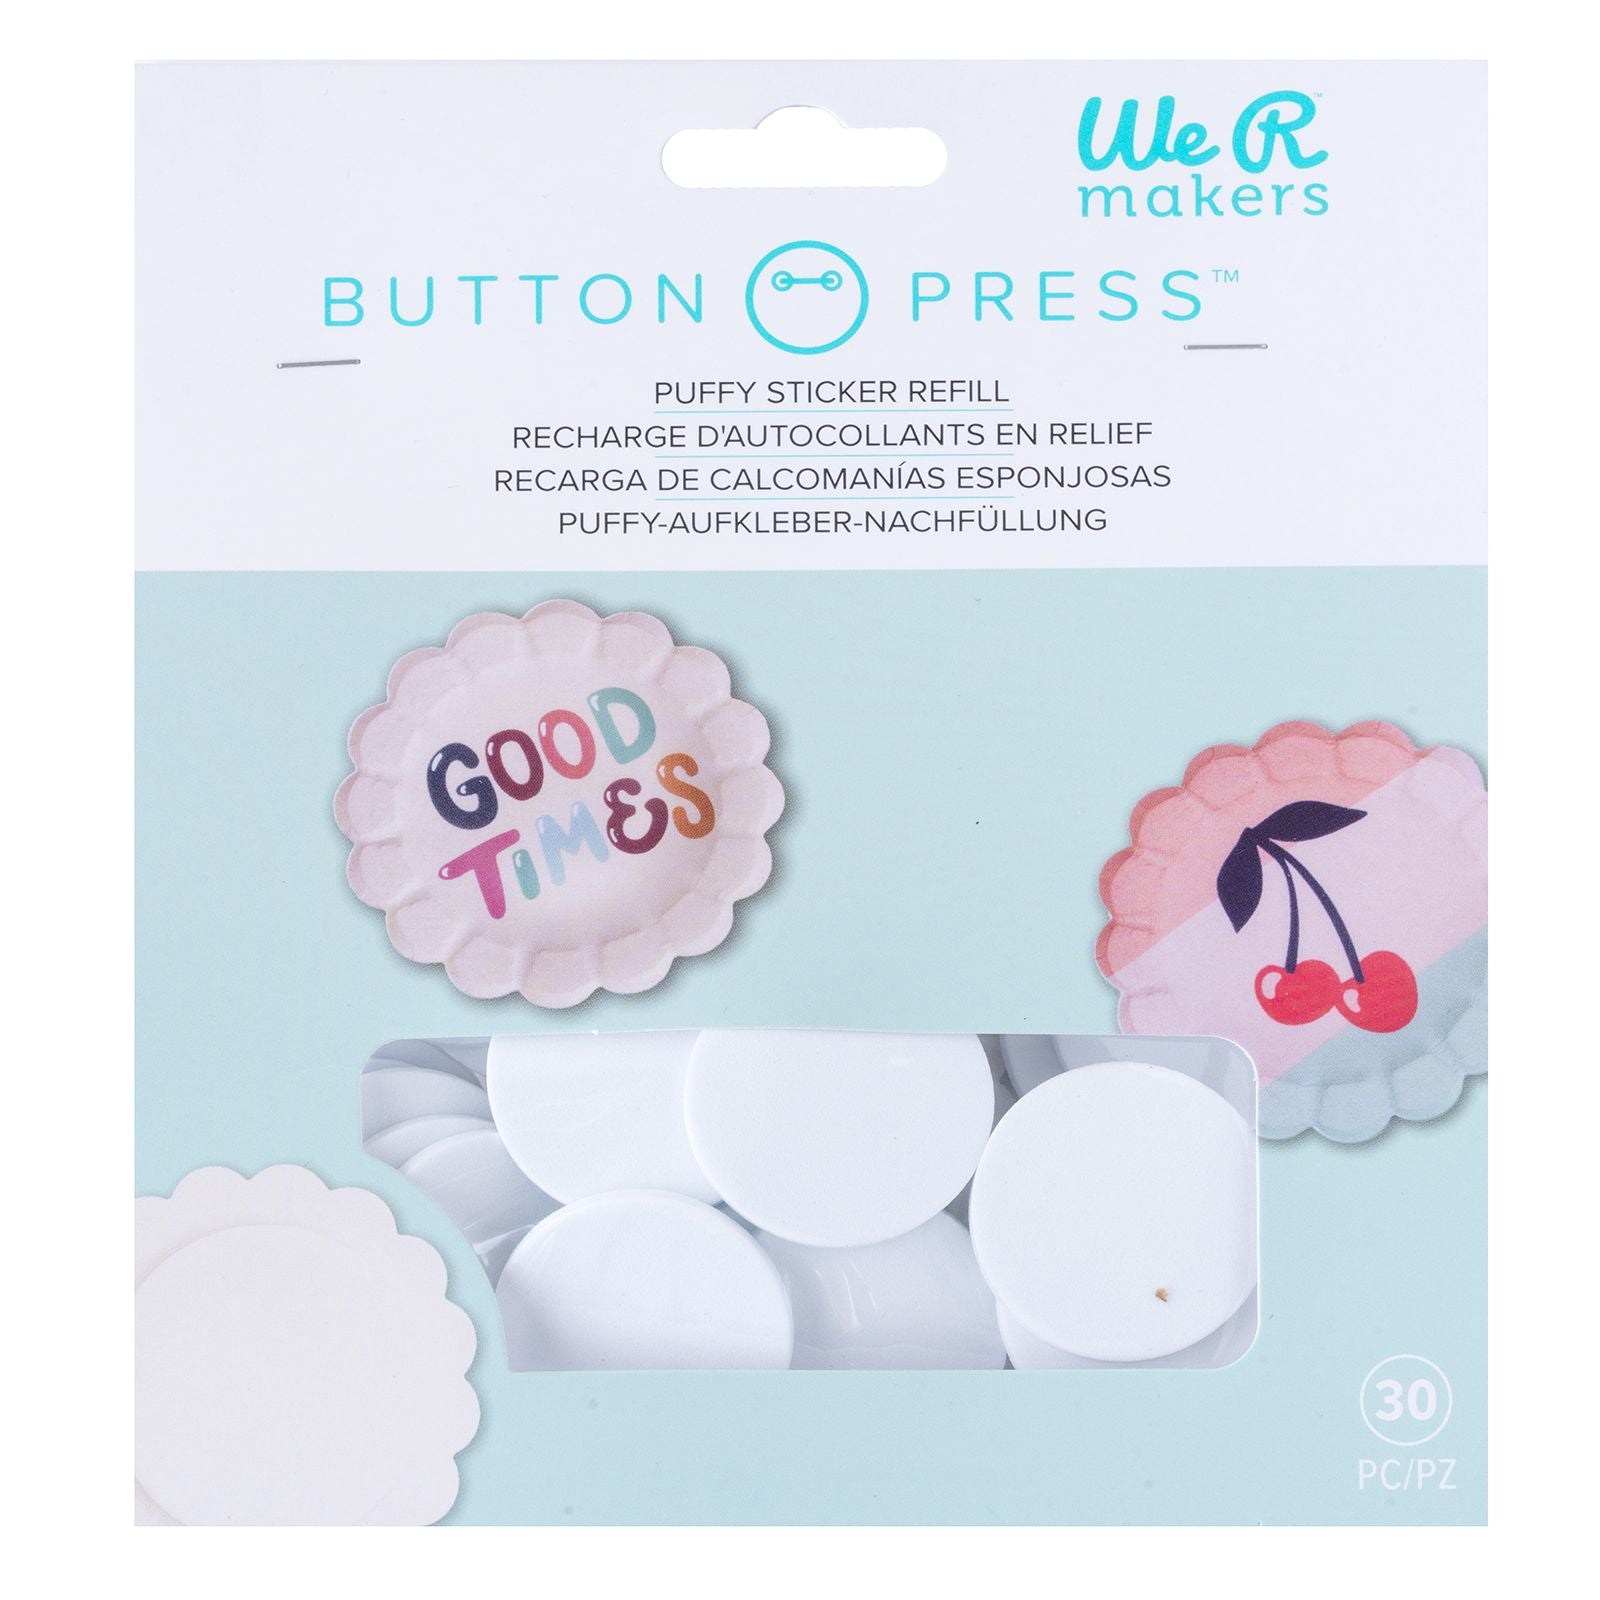 Imanes Adhesivos Button Press - Oh! Naif